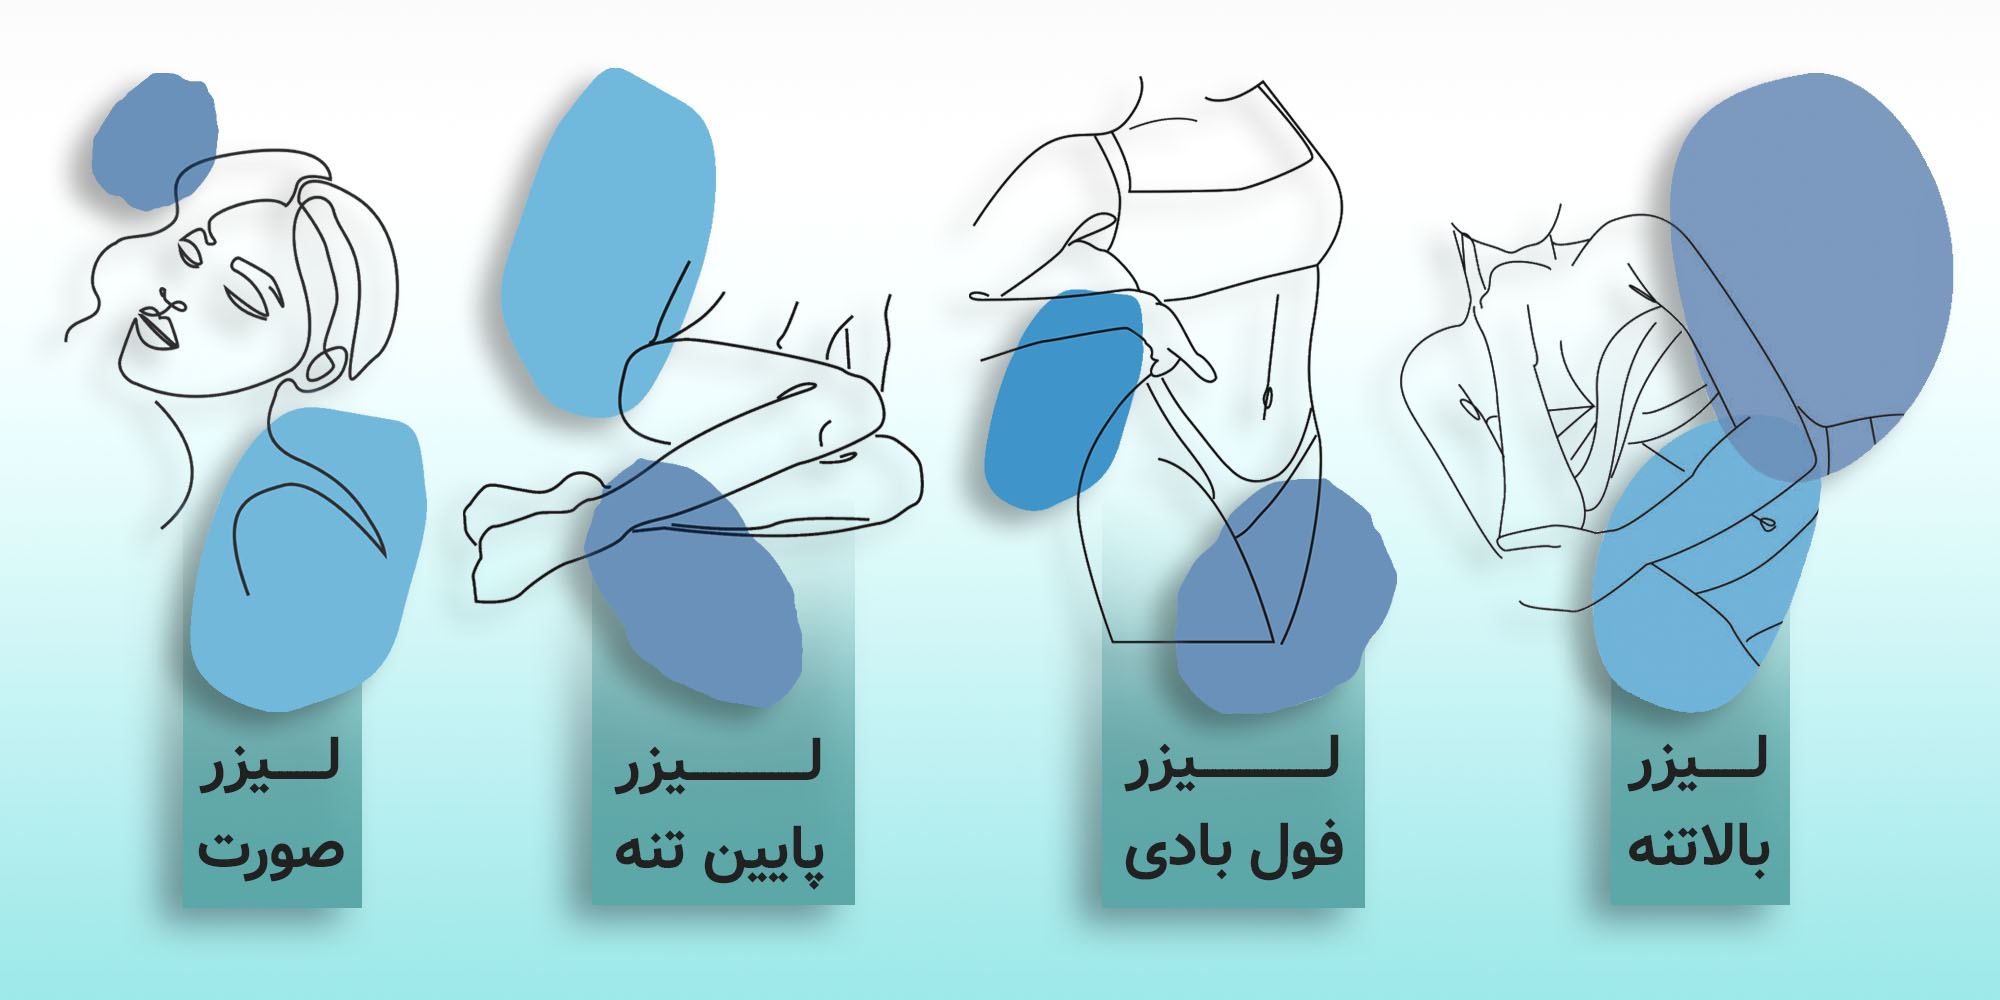 لیزر نواحی مختلف بدن در تهران